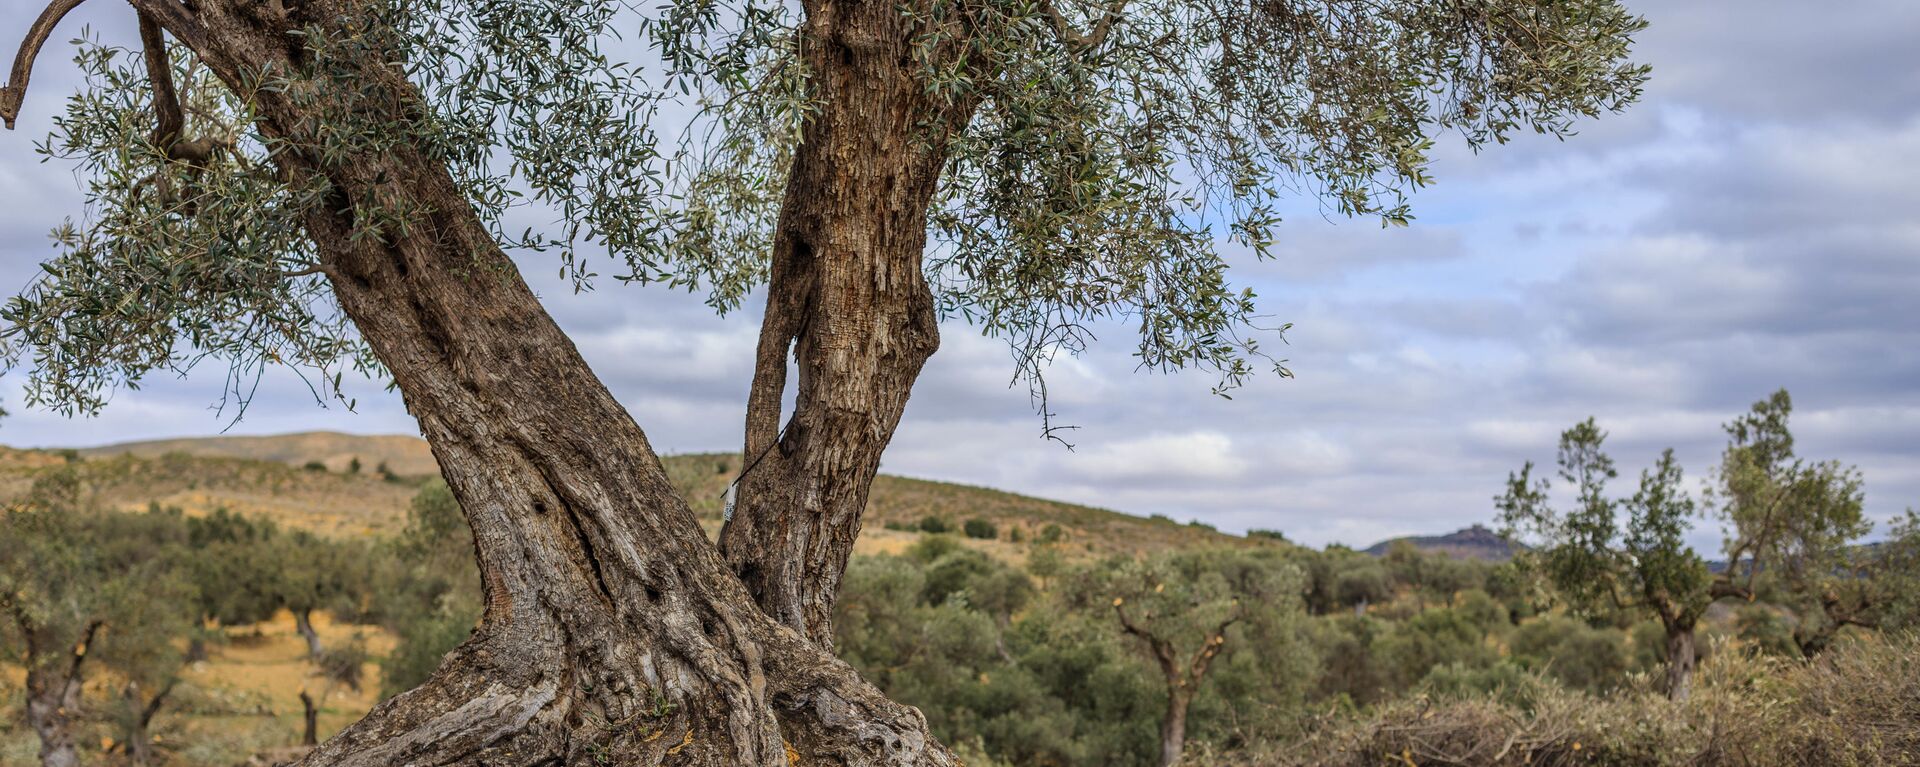 Un olivo en el pueblo de Oriete, en la provincia española de Teruel - Sputnik Mundo, 1920, 13.01.2021